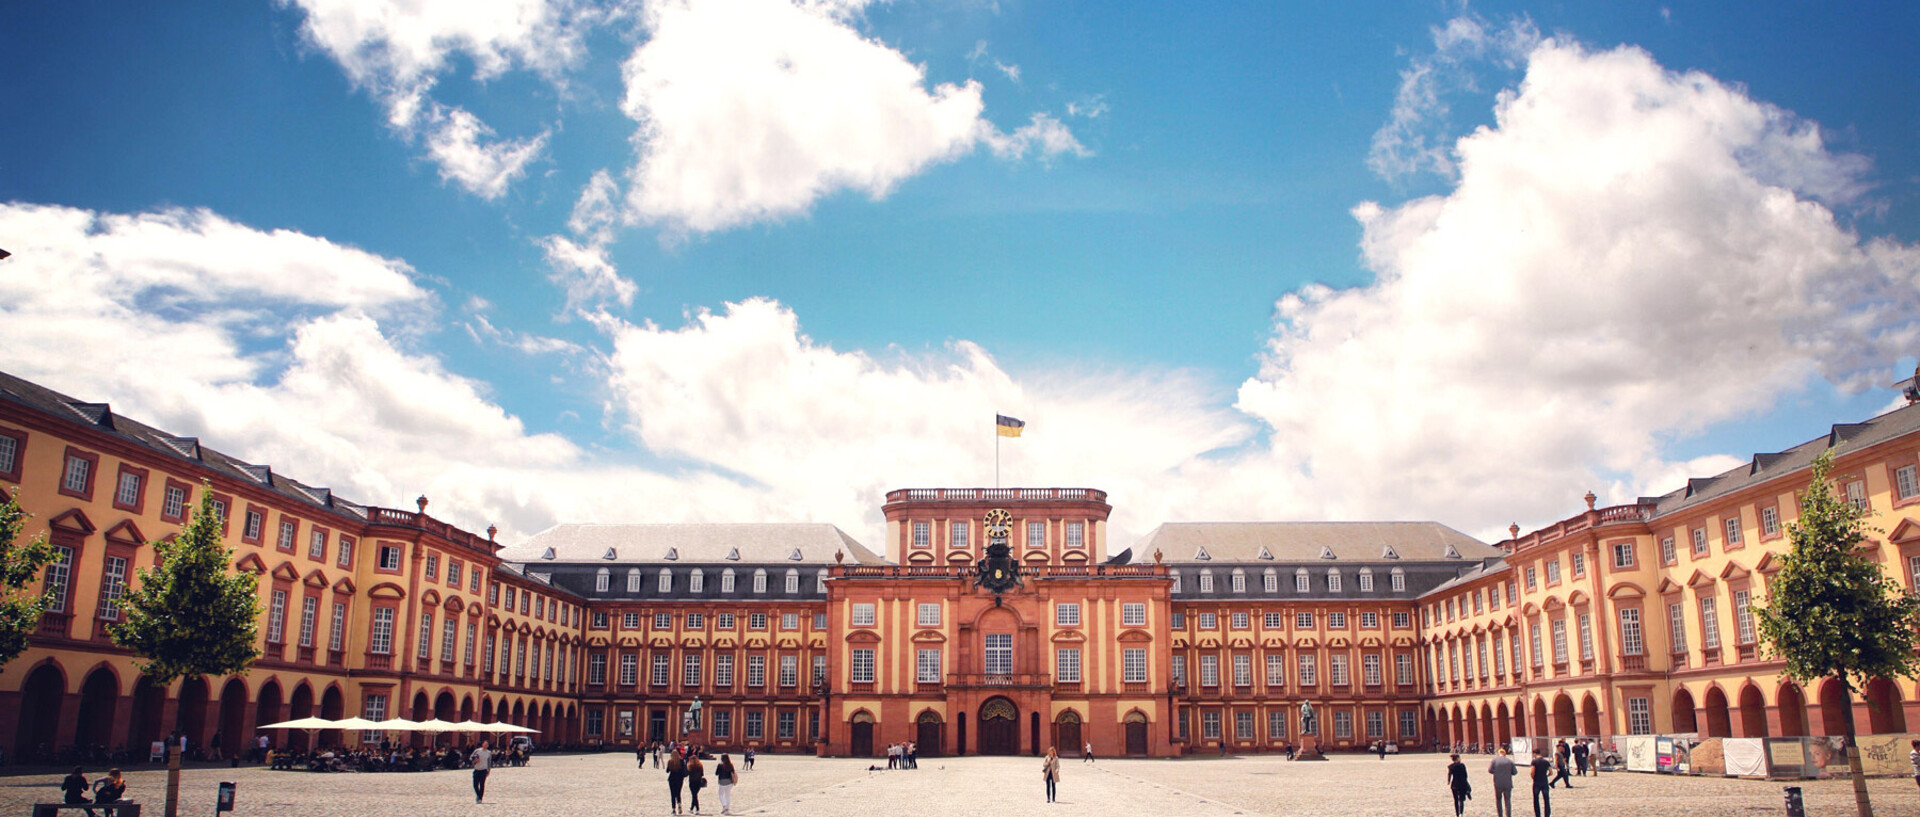 Das Barock-Schloss und der Ehrenhof der Universität Mannheim unter strahlend blauem Himmel. Das Schloss ist von unzähligen Fenstern, rotem Sandstein und einer gelben Fassade geprägt.